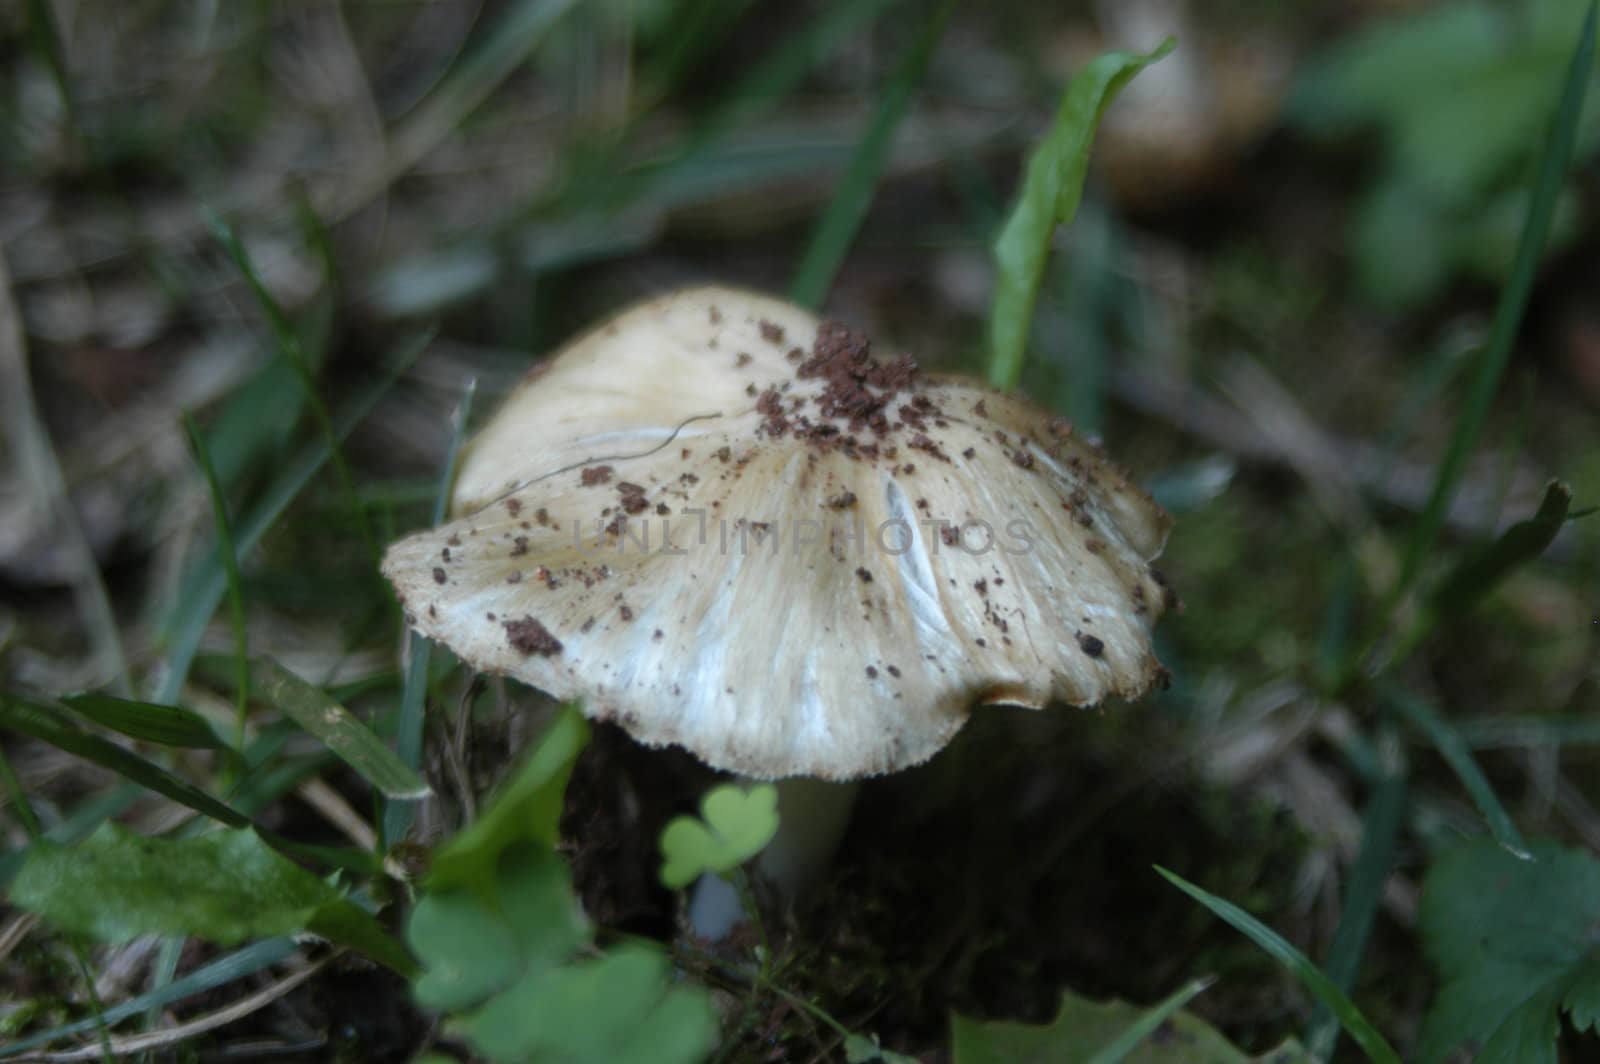 A closeup of a mushroom in the yard